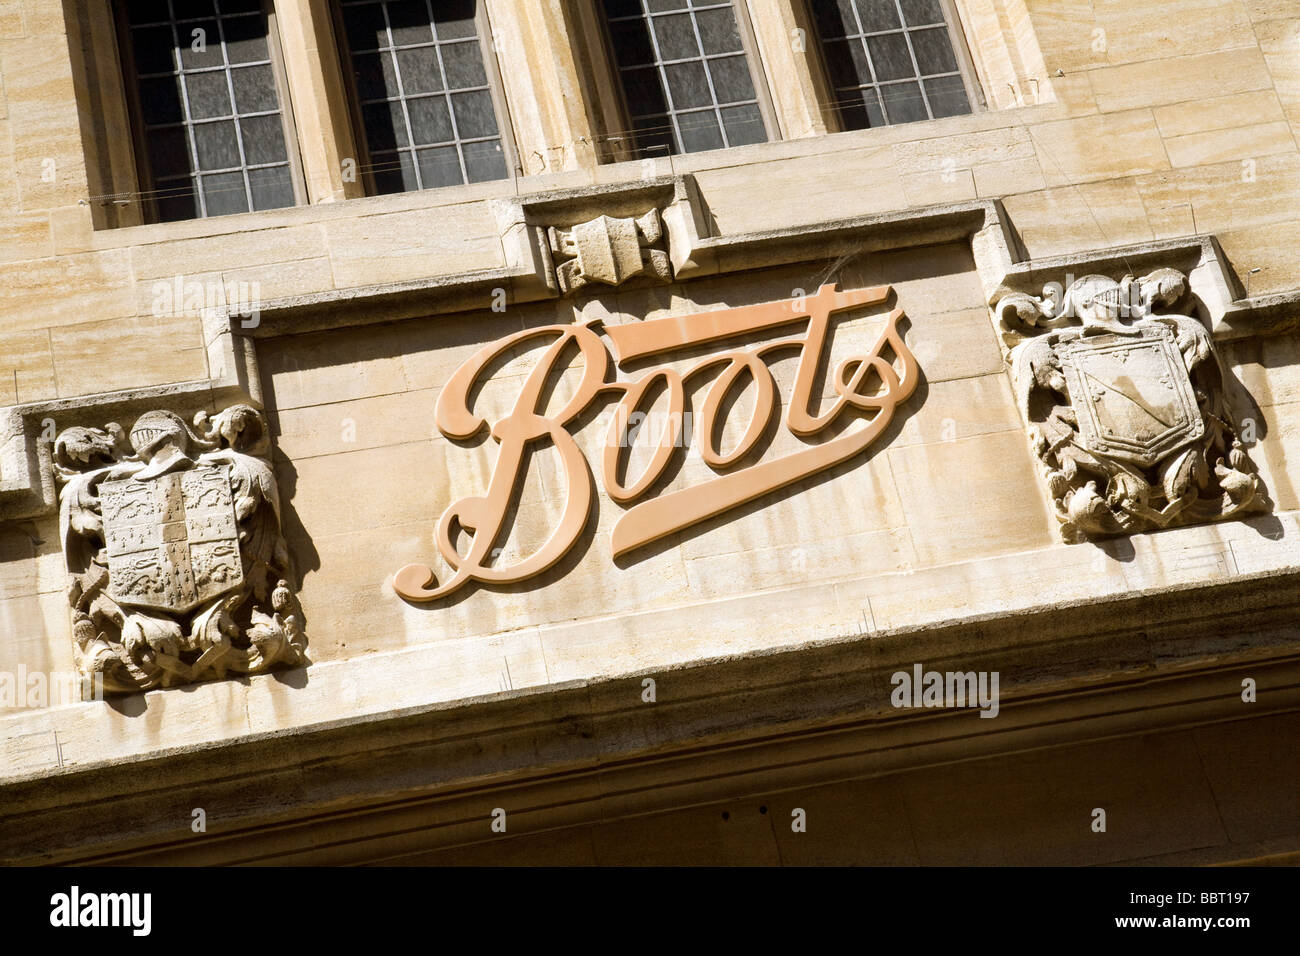 Signe pour Boots the Chemist, Cambridge, Royaume-Uni Banque D'Images